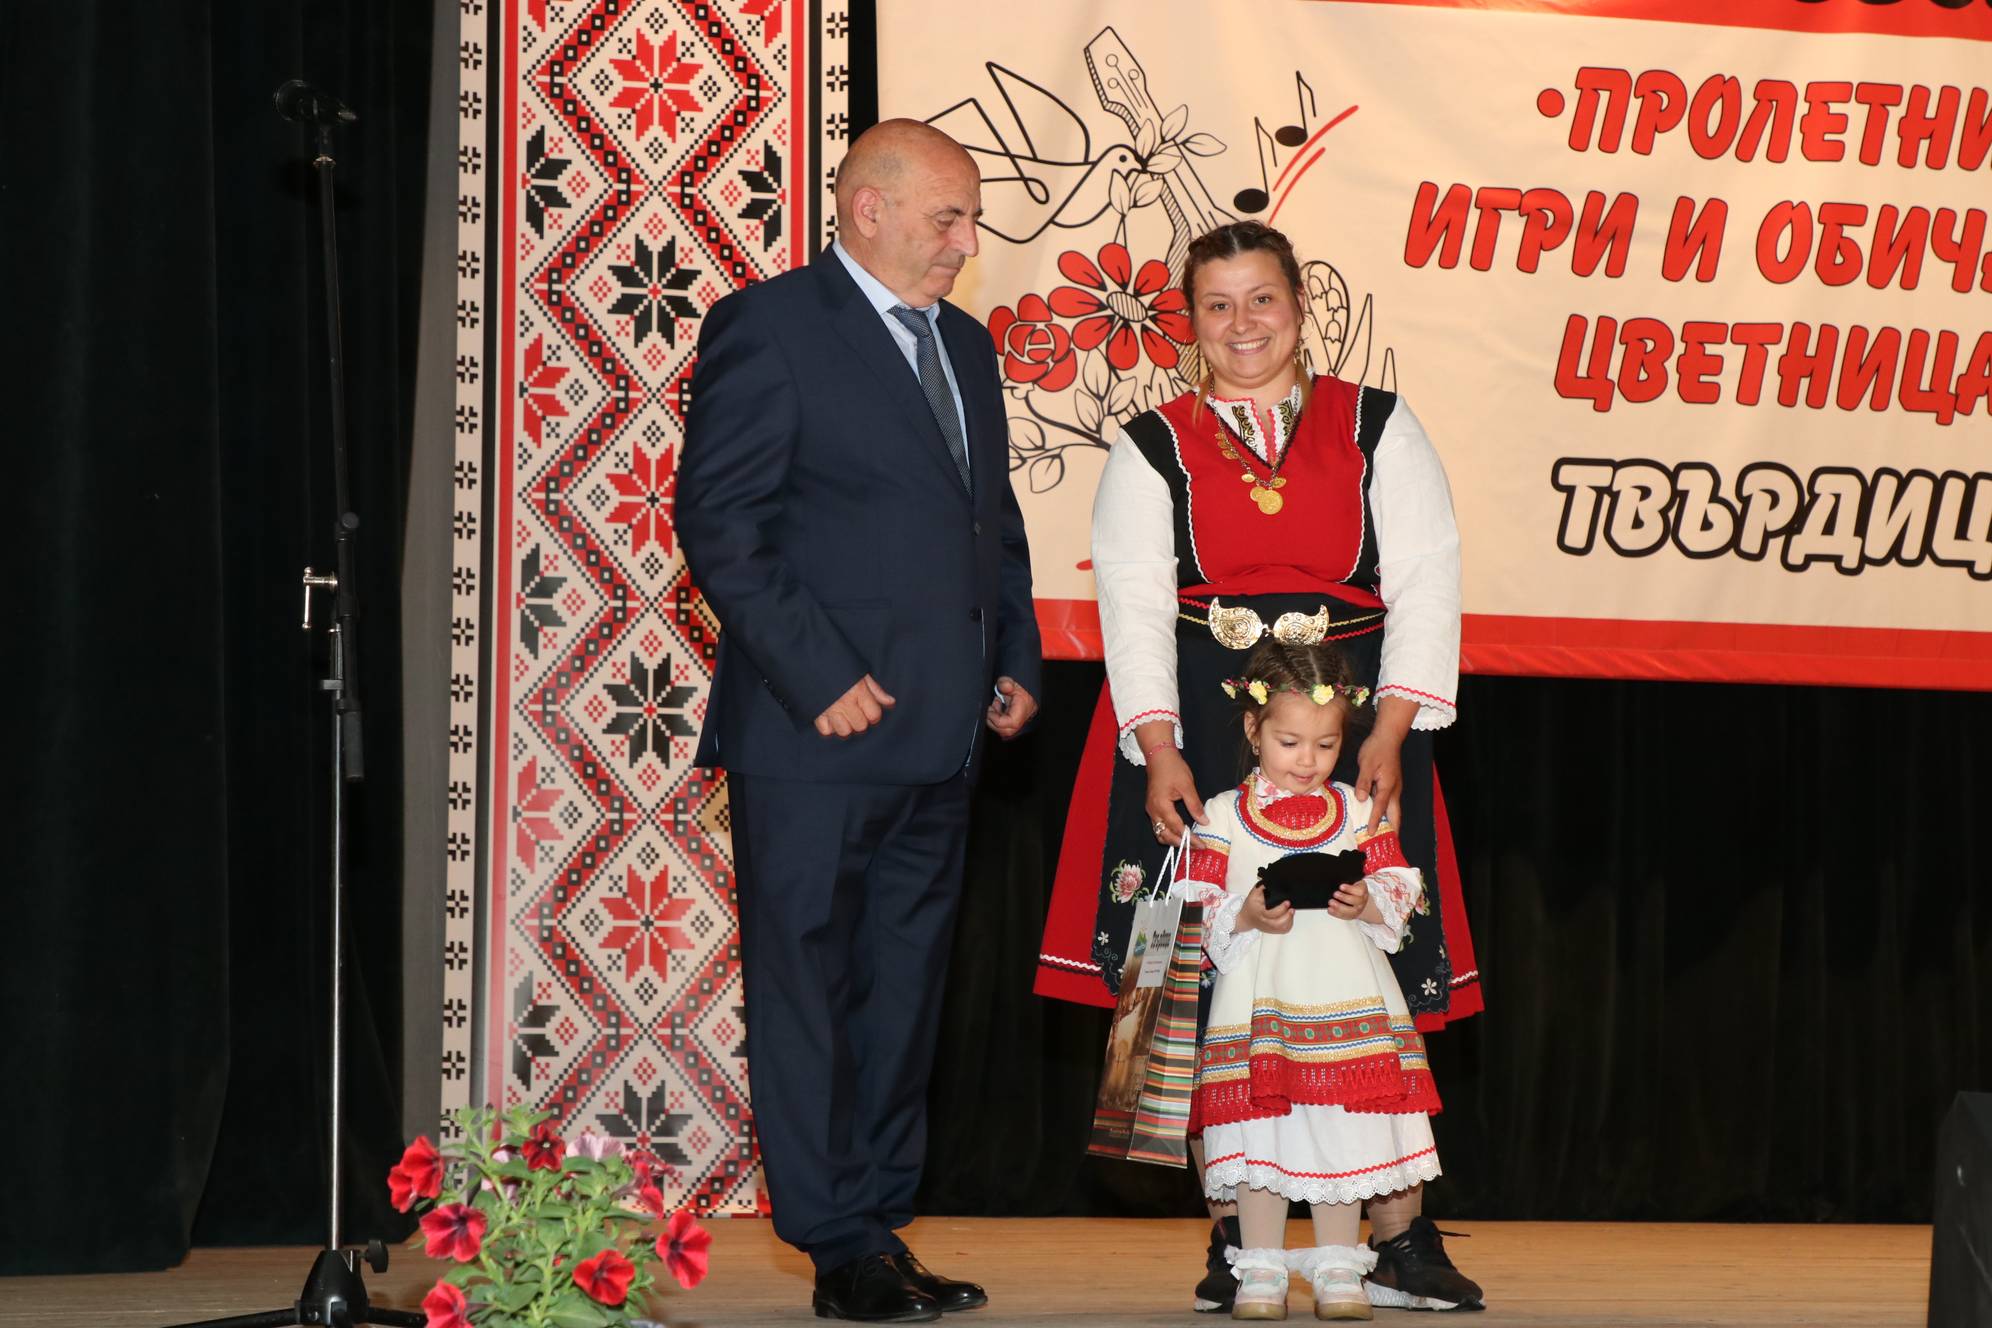 Кметът на Твърдица Атанас Атансов награждава участници във фолклорния събор